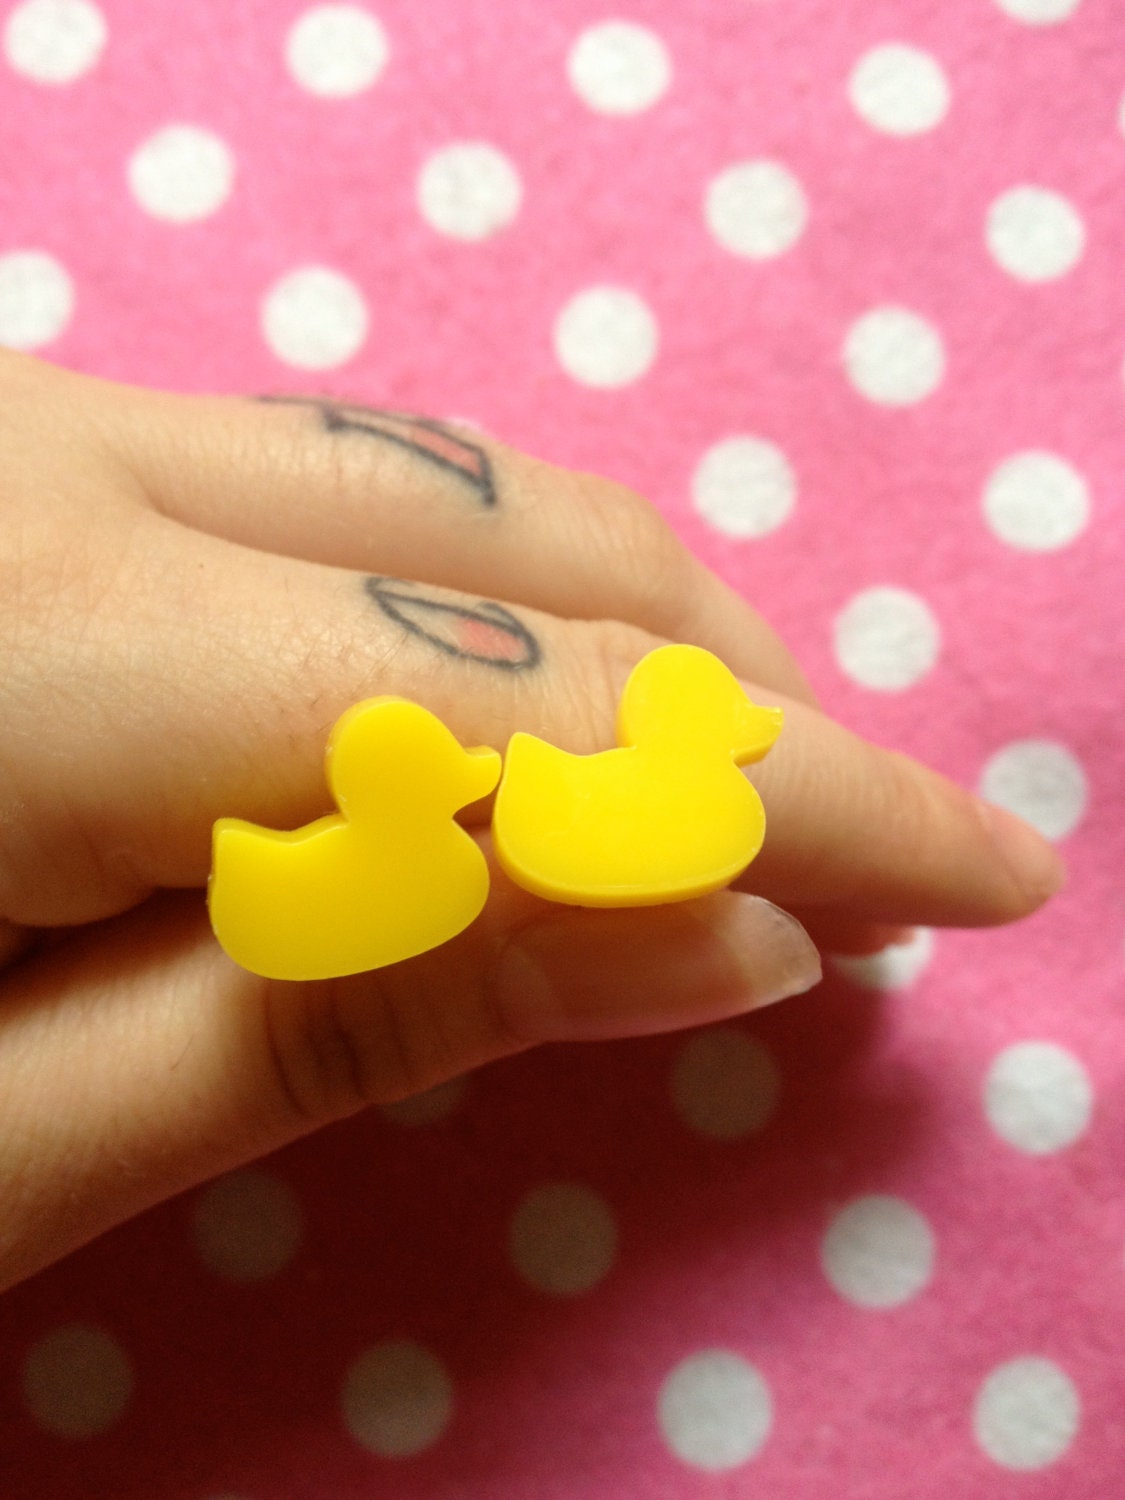 Rubber Duck Earrings